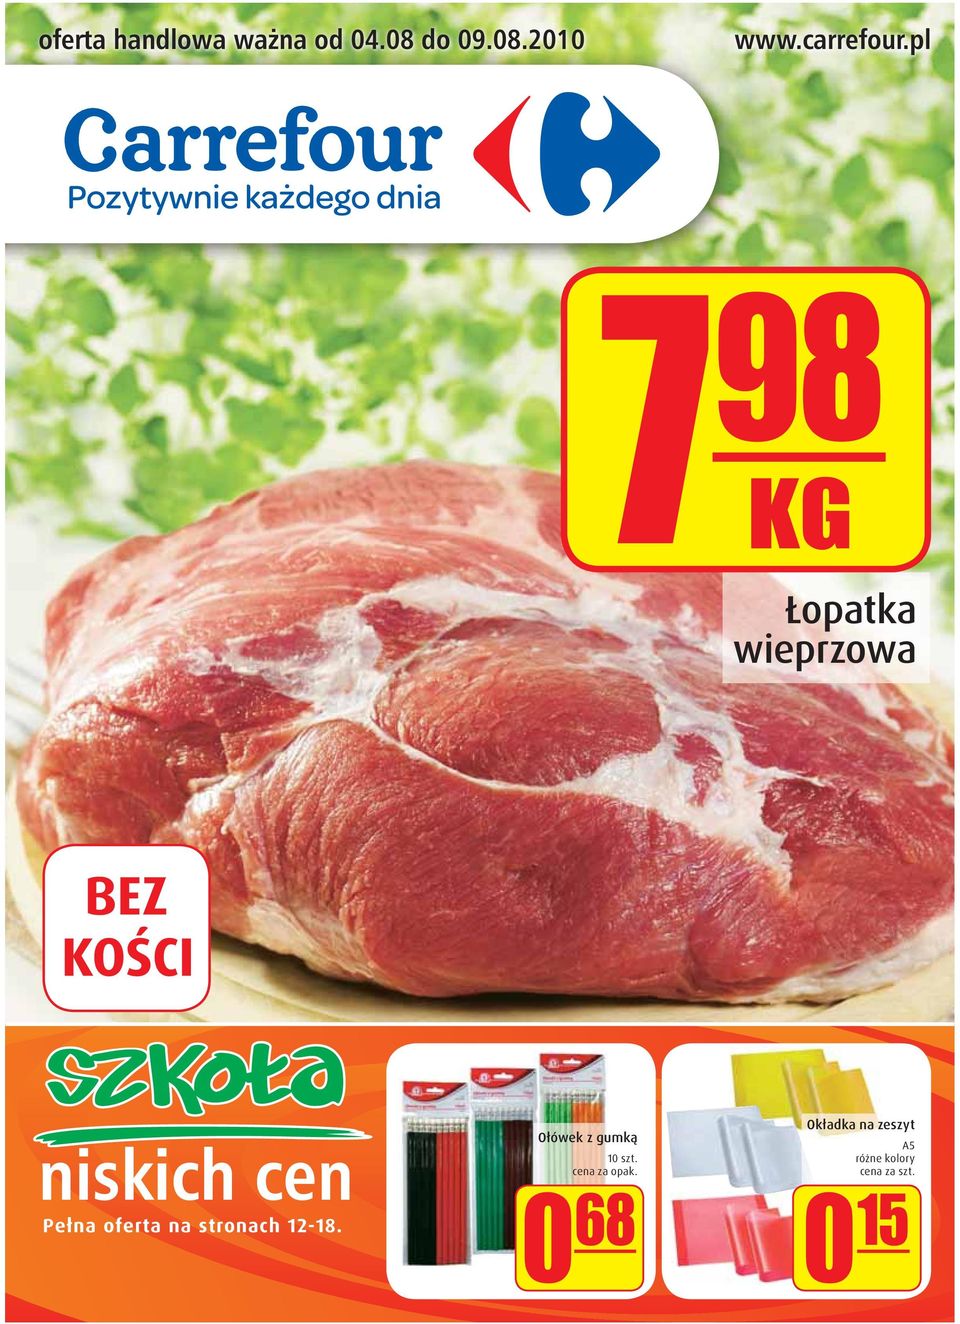 pl 7 98 KG Łopatka wieprzowa niskich cen Pełna